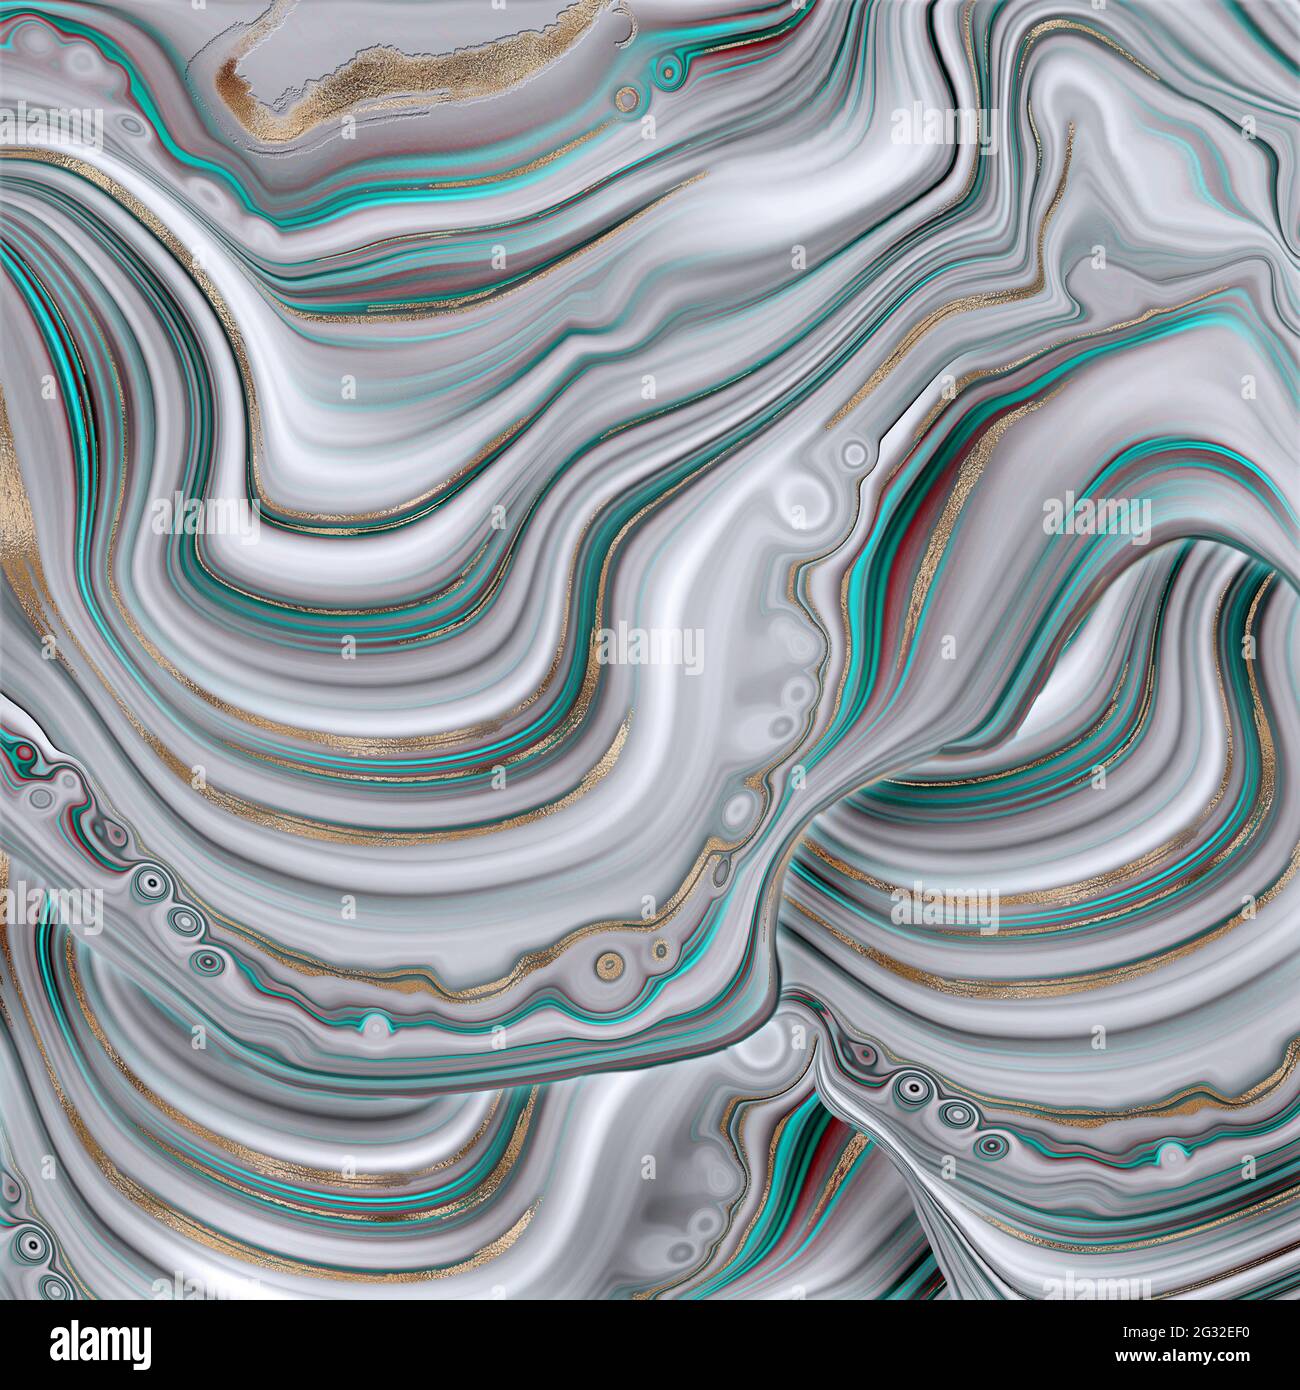 Abstrakt trendy türkis blau grün Hintergrund Vorlage. Flüssiges, abstraktes Achat-Design aus Marmor mit goldfarbener Wellenstruktur. Cover, Einladung, Banner, Plac Stockfoto